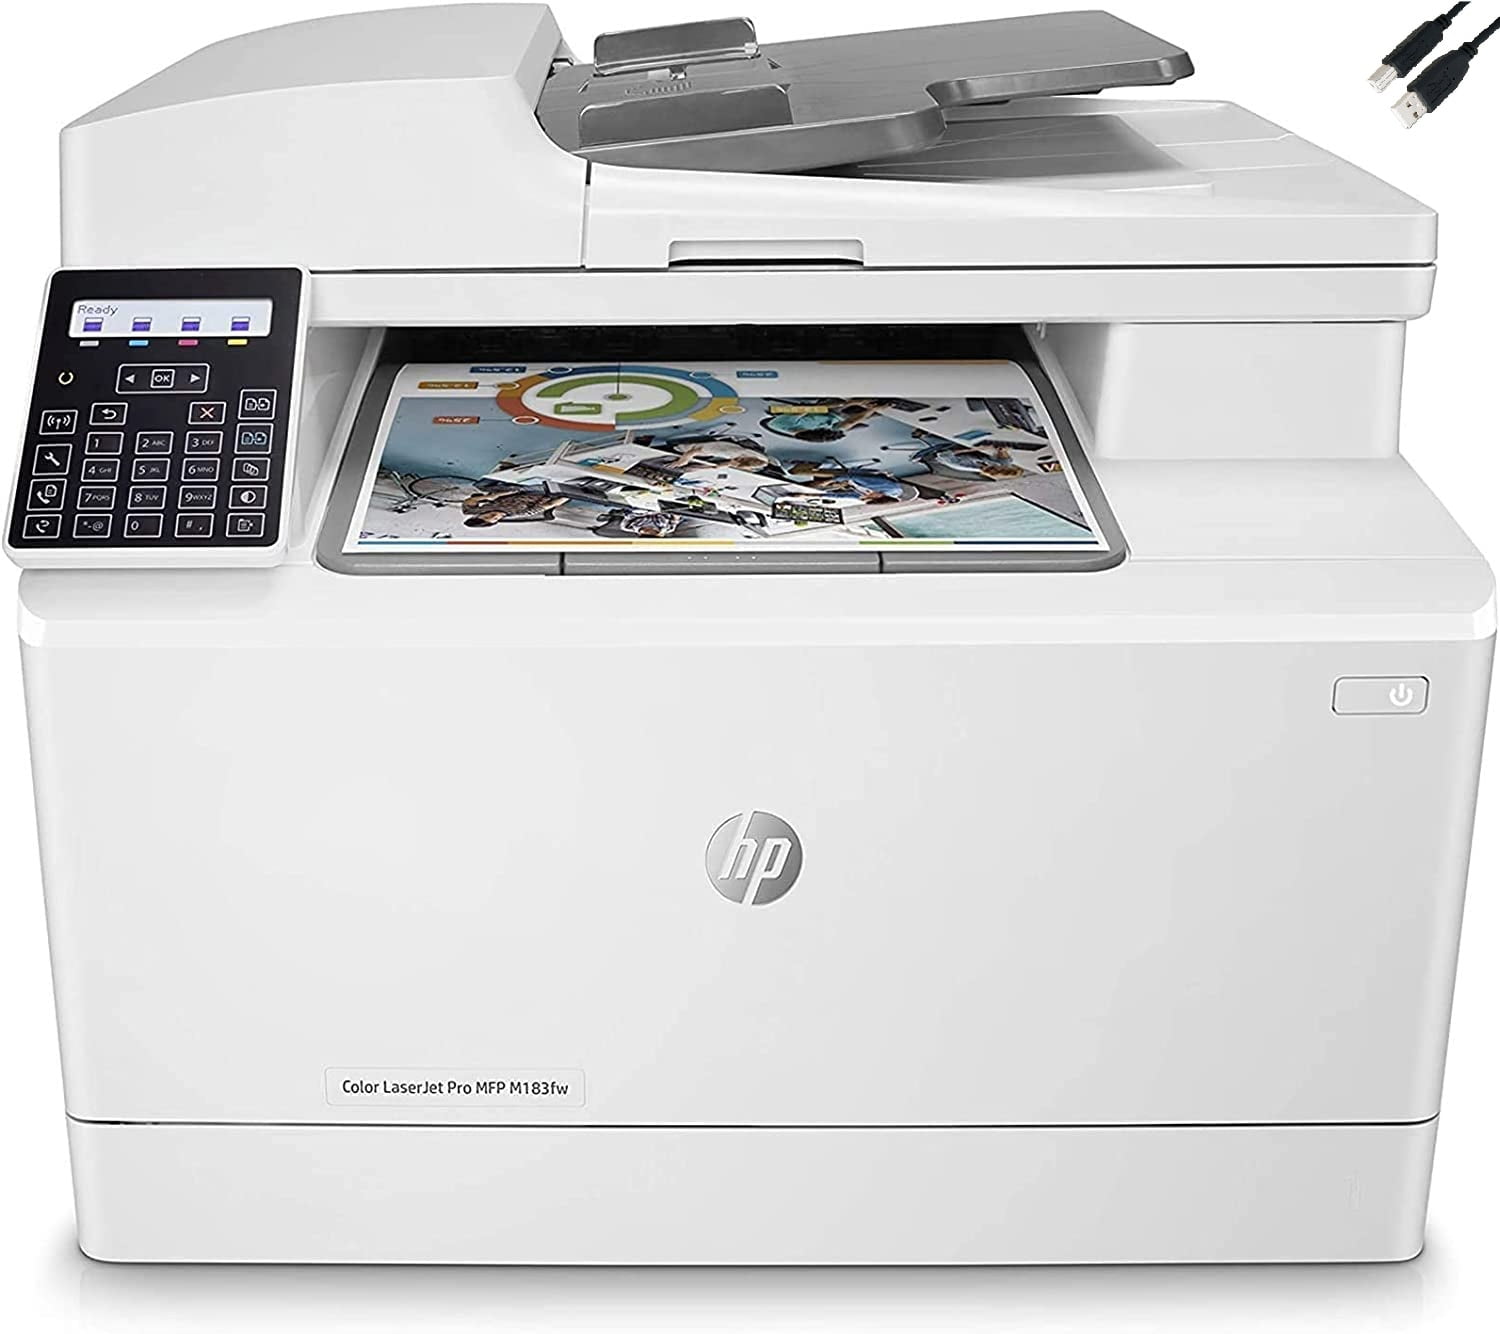 HP LaserJet Pro M28w All-In-One Wireless Laser Printer (Refurbished)